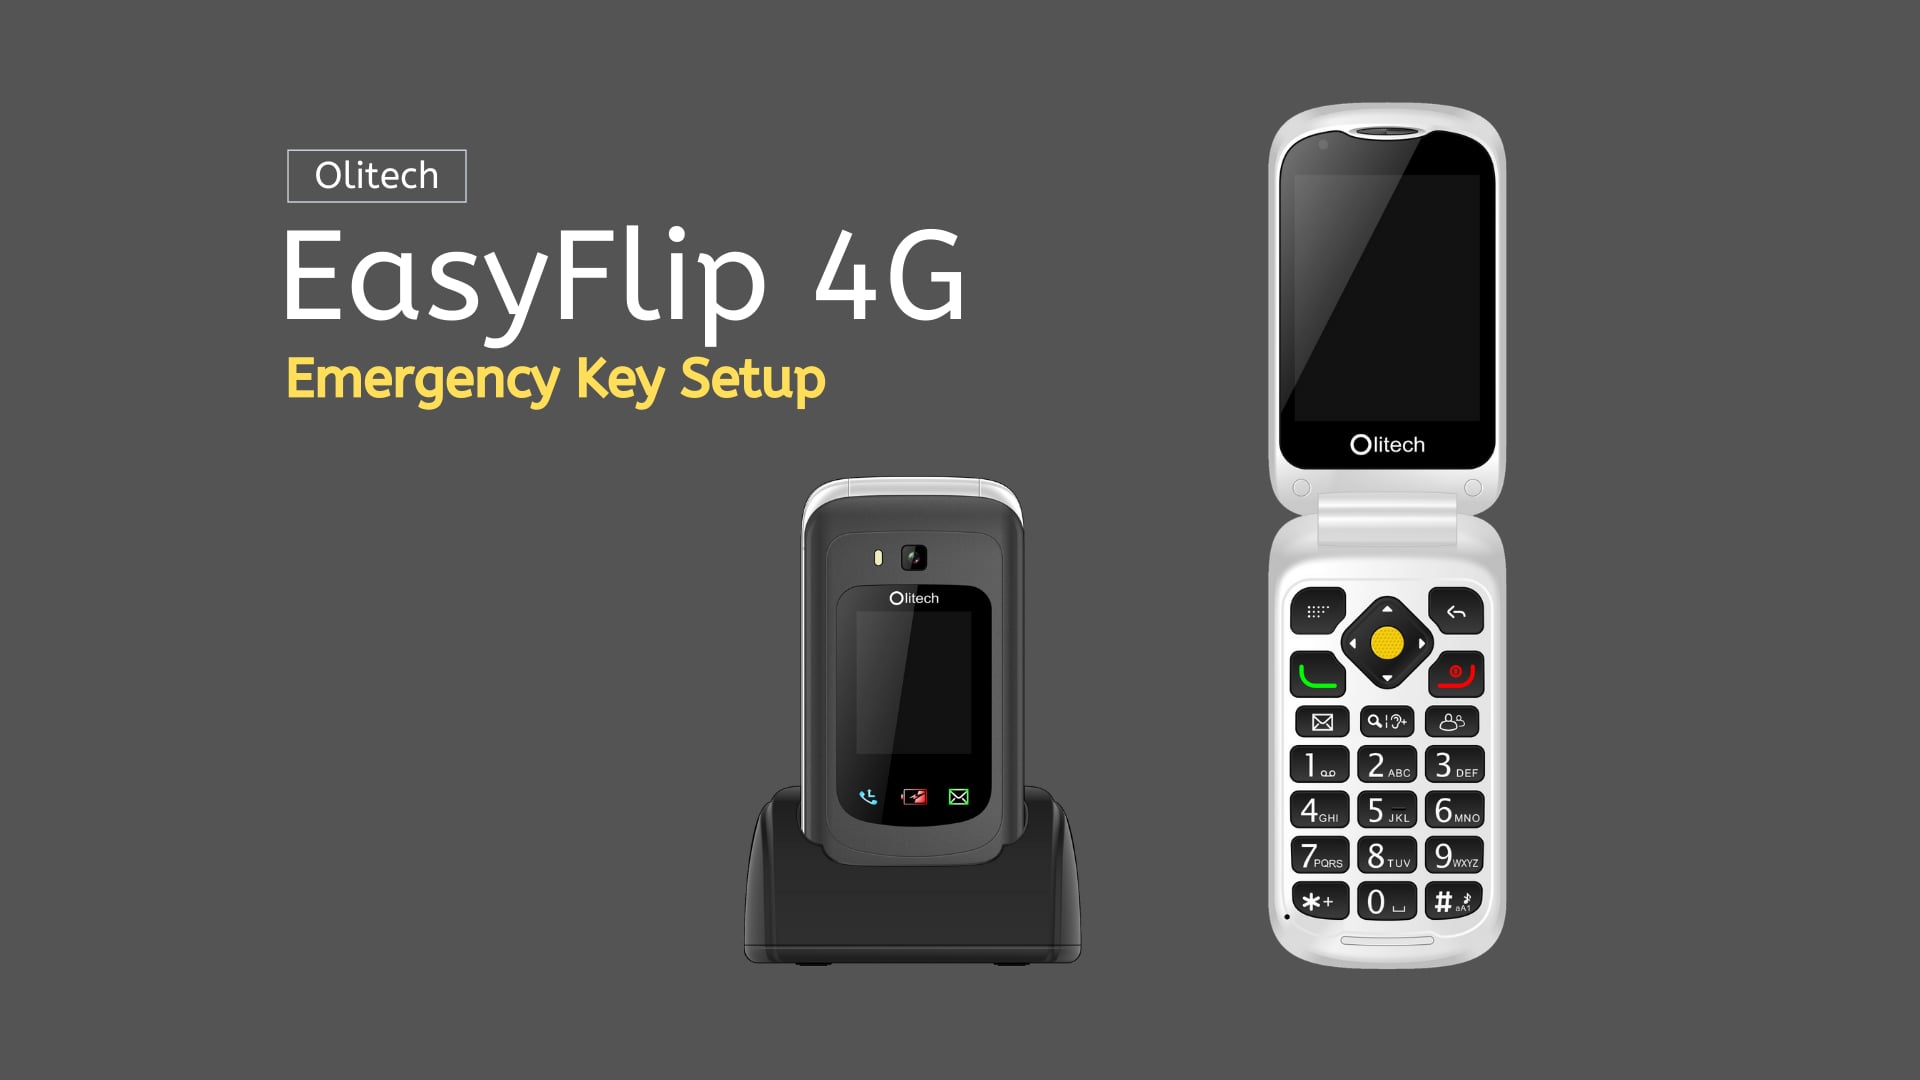 Olitech EasyFlip 4G - Emergency Key Setup